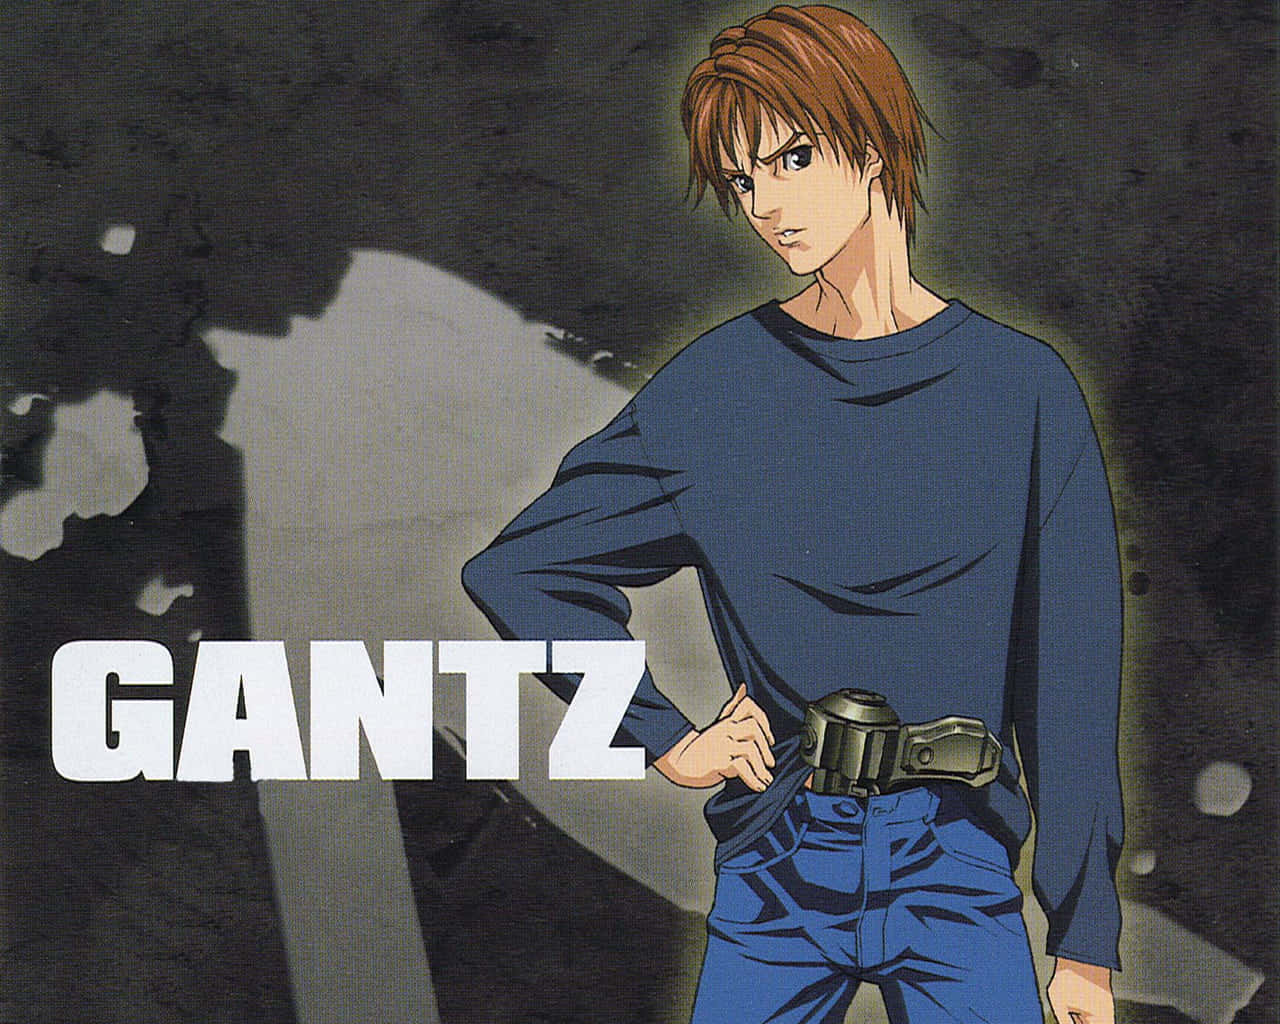 Gantz Background